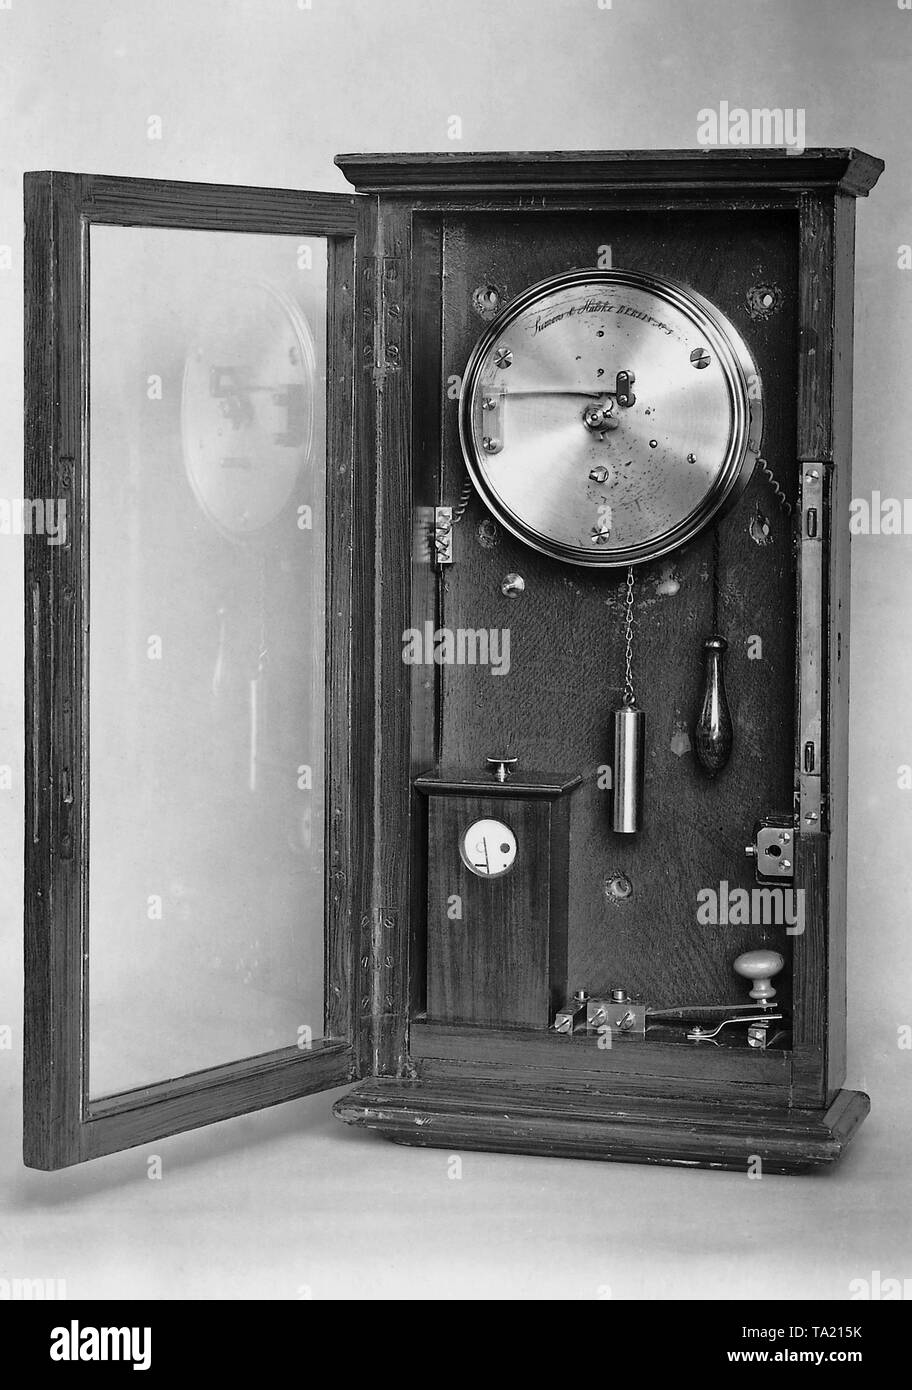 Alarma de incendio eléctrico por Werner Siemens. Foto de stock